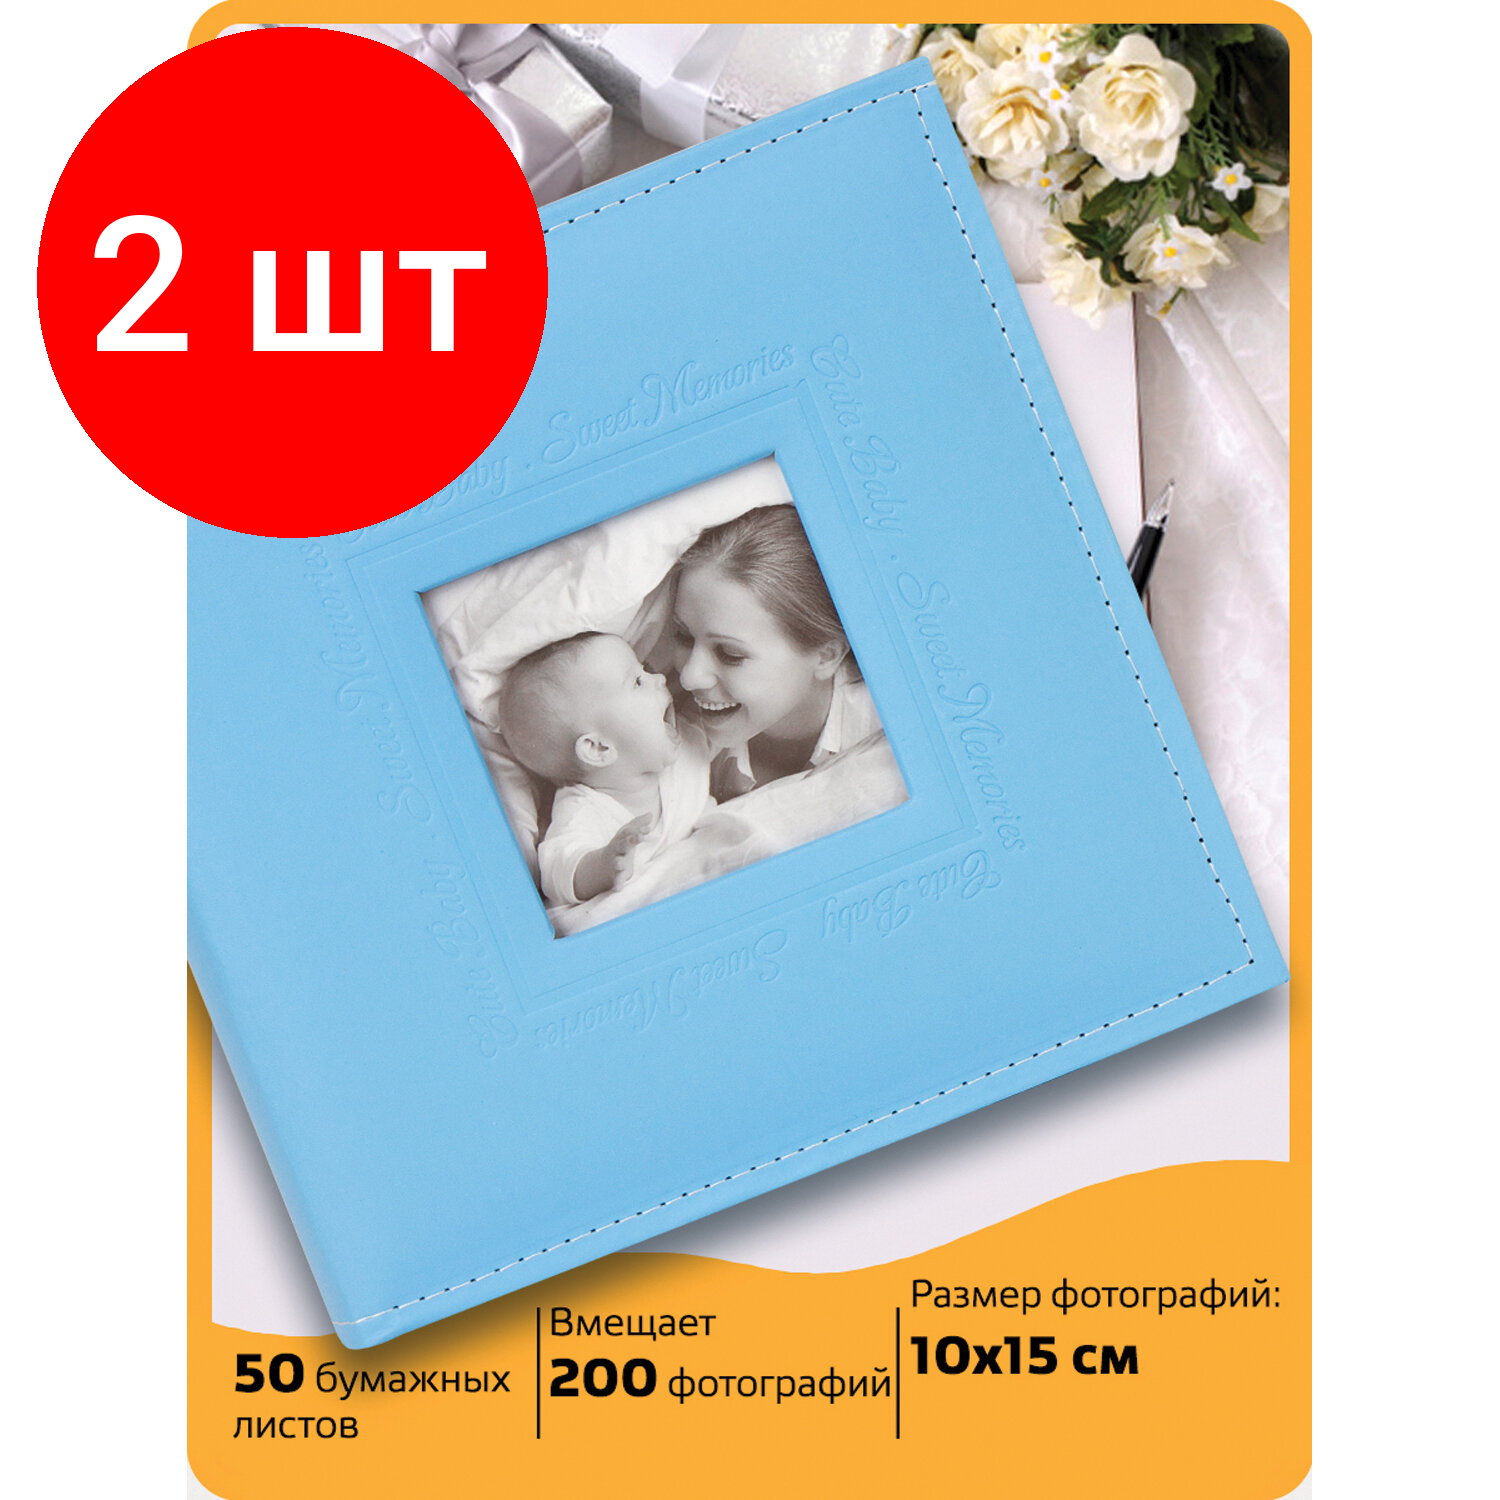 Комплект 2 шт, Фотоальбом BRAUBERG "Cute Baby" на 200 фото 10х15 см, под кожу, бумажные страницы, бокс, синий, 391142